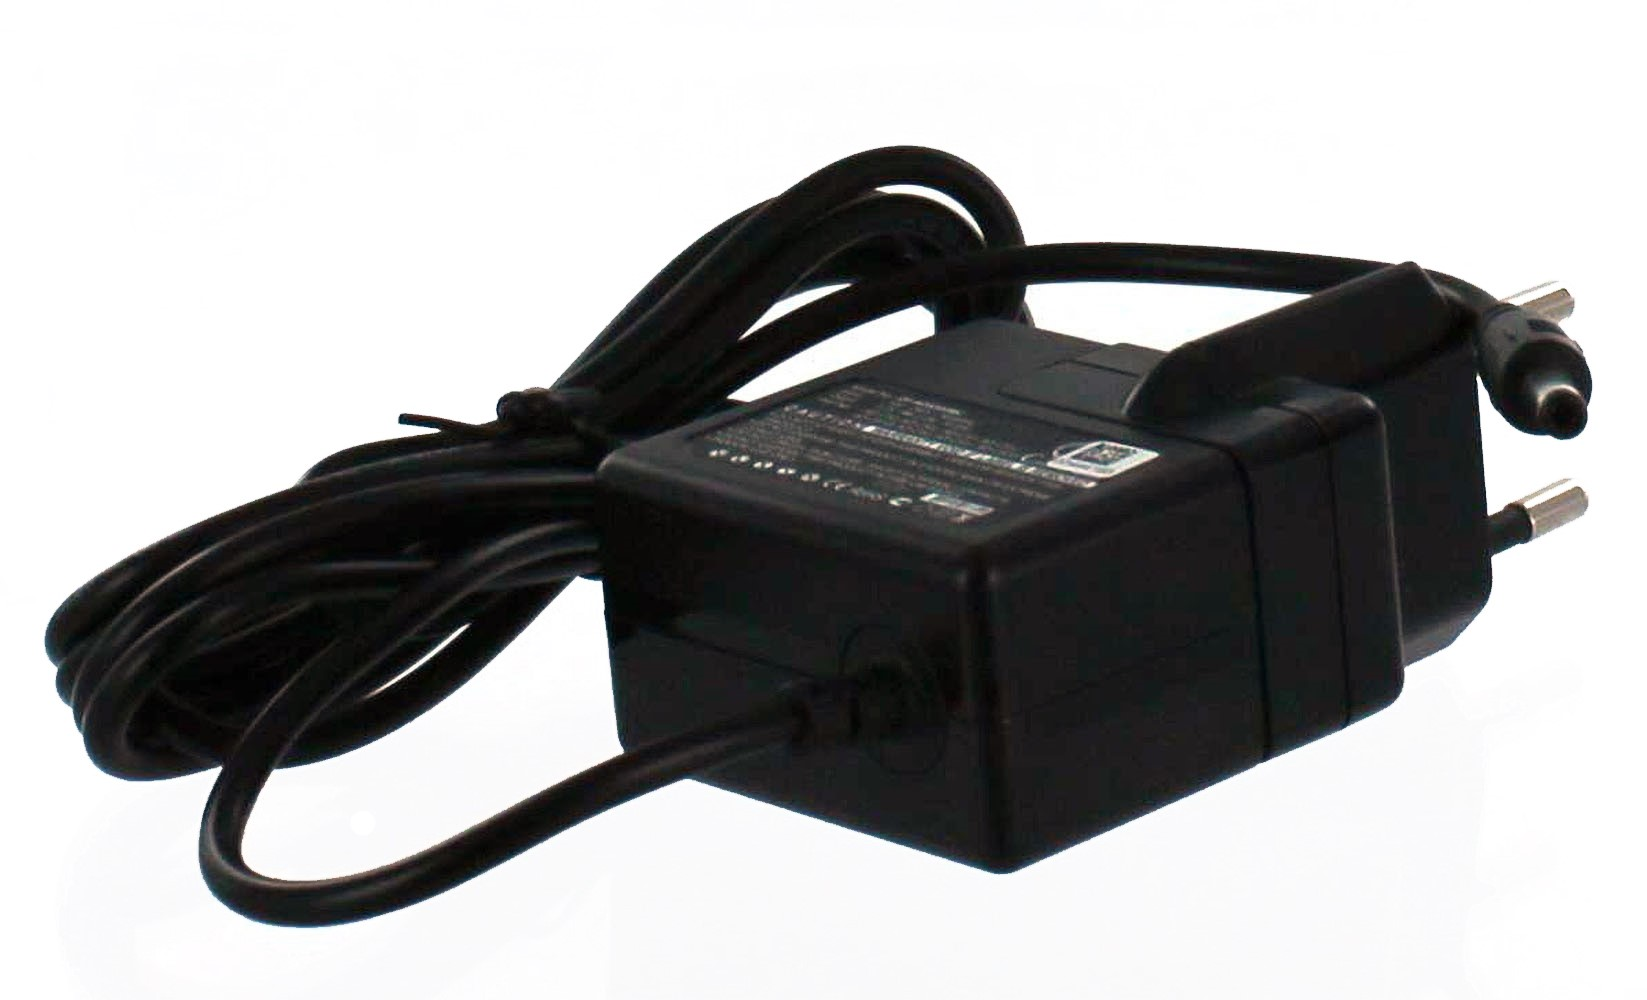 Volt, 5.3 mit Casio schwarz Exilim Casio, kompatibel MOBILOTEC Netzteil/Ladegerät EX-S500 Netzteil